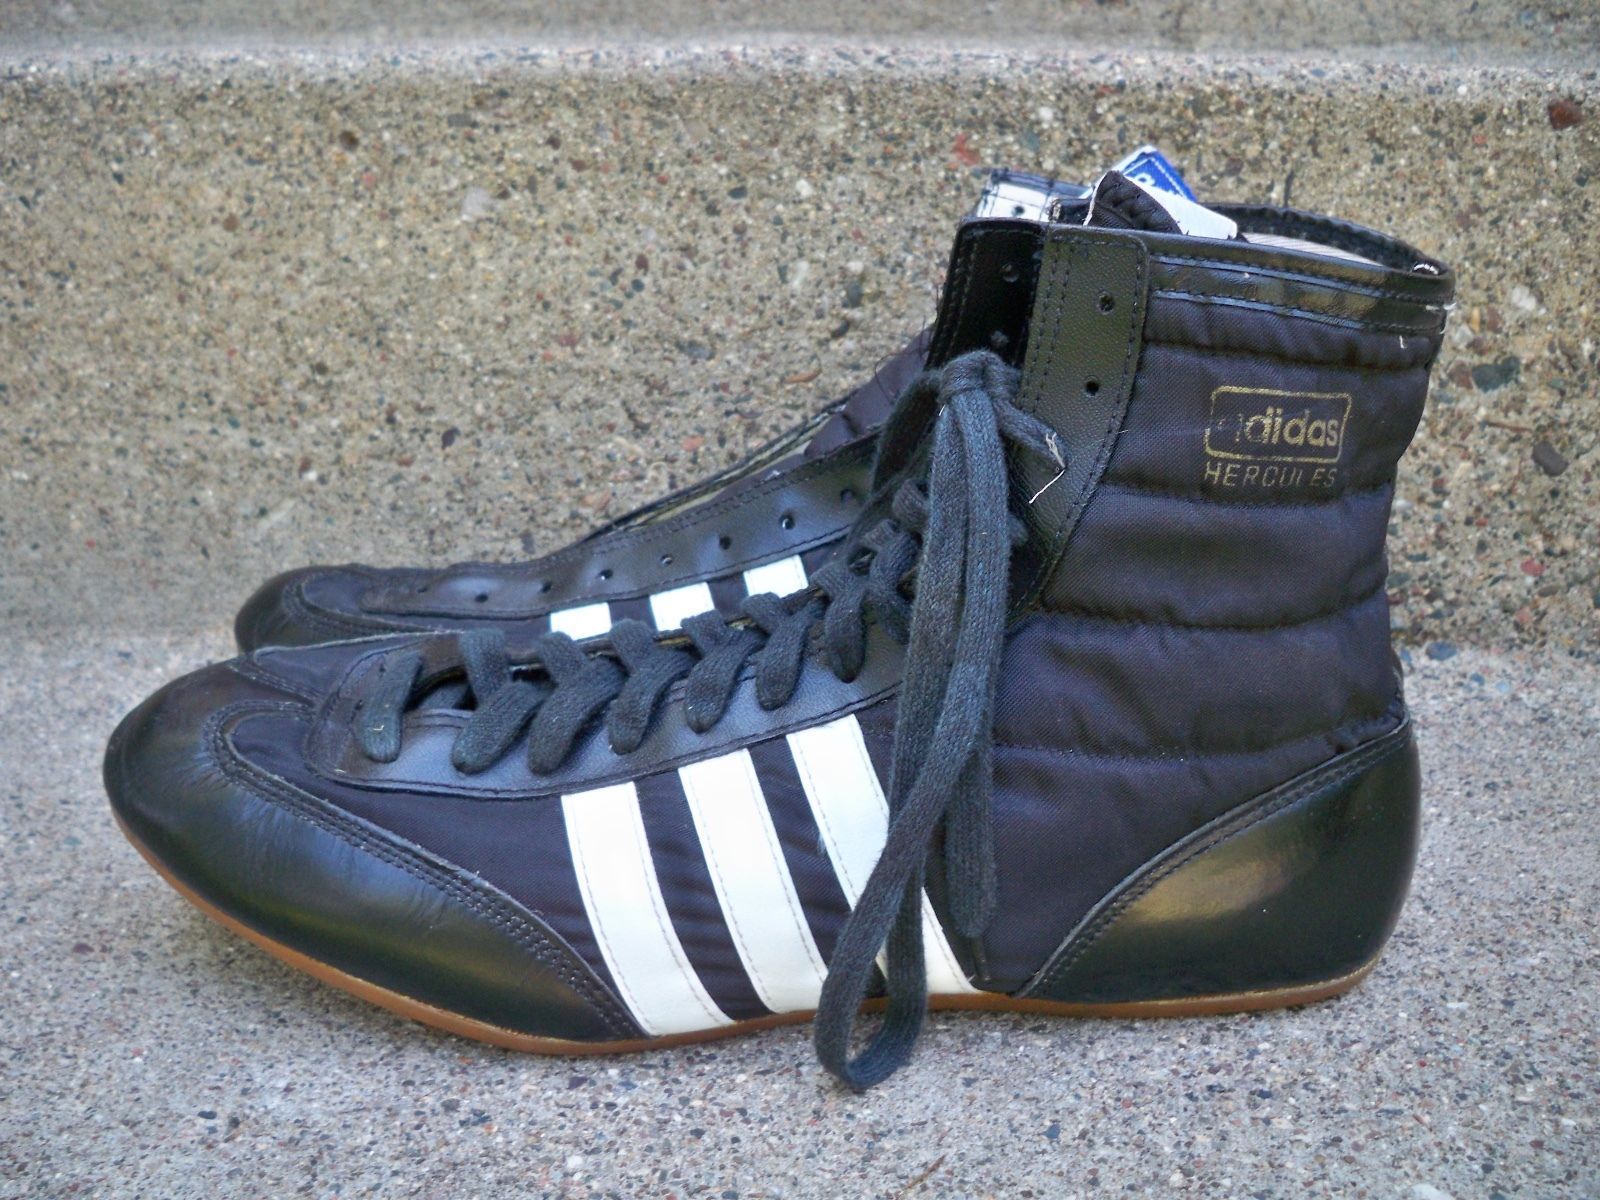 Adidas Wrestling Shoes Freddie Mercury | vlr.eng.br